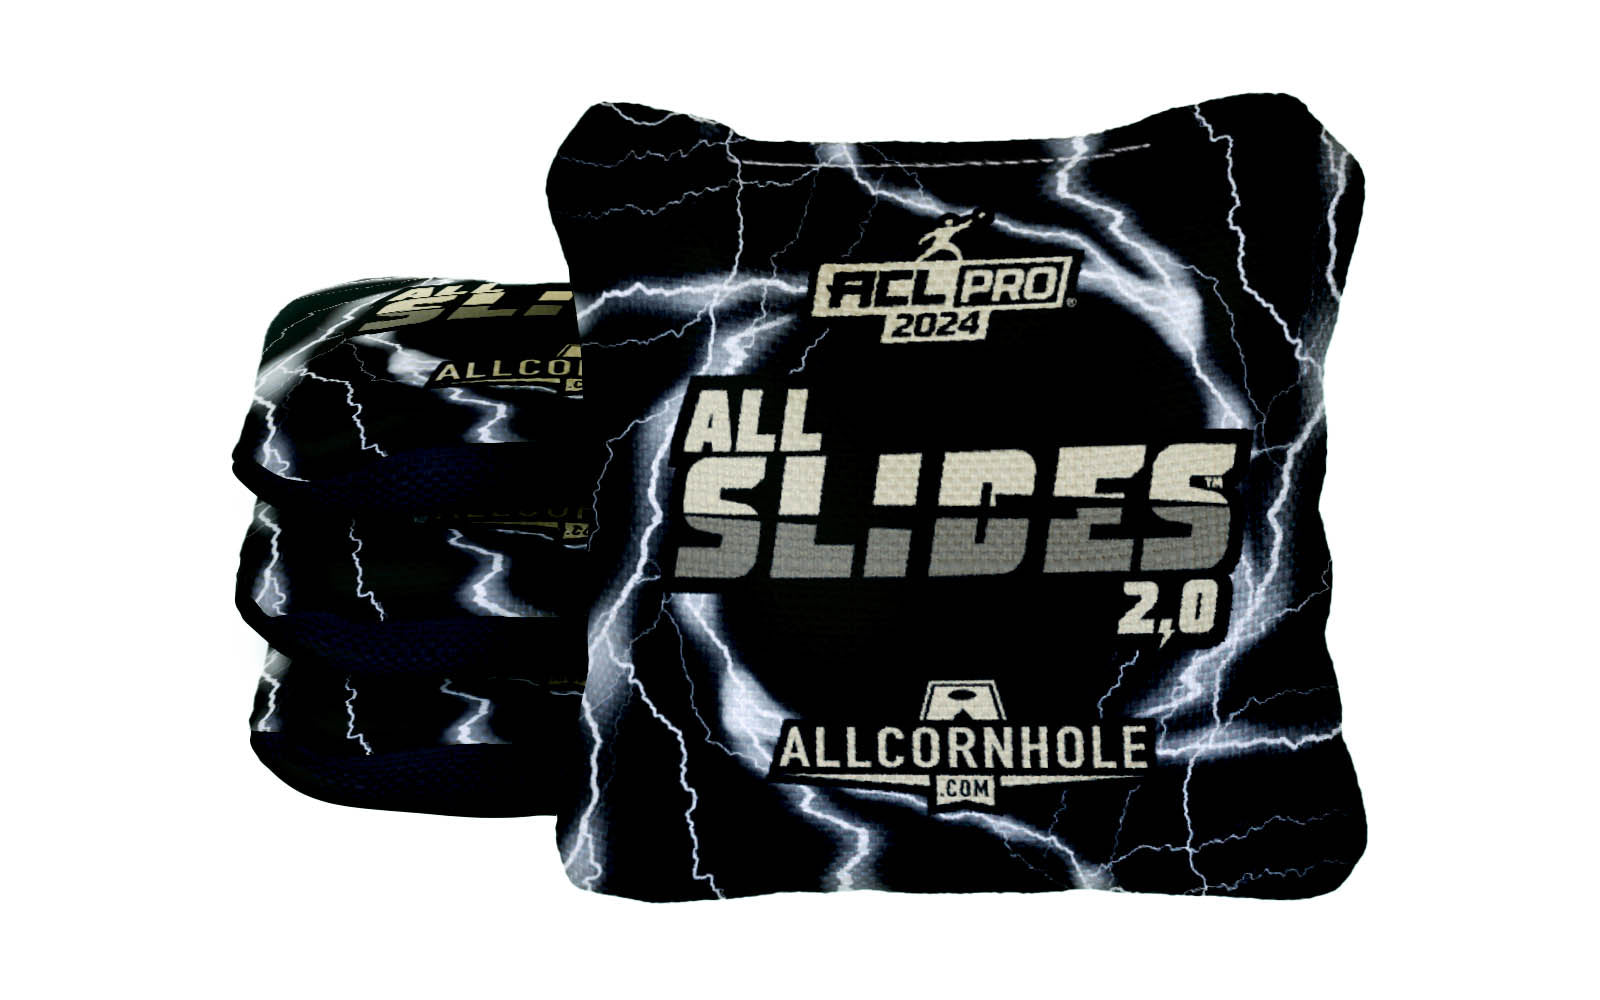 Officially Licensed Collegiate Cornhole Bags - AllCornhole All Slide 2.0 - Set of 4 - Wake Forest University